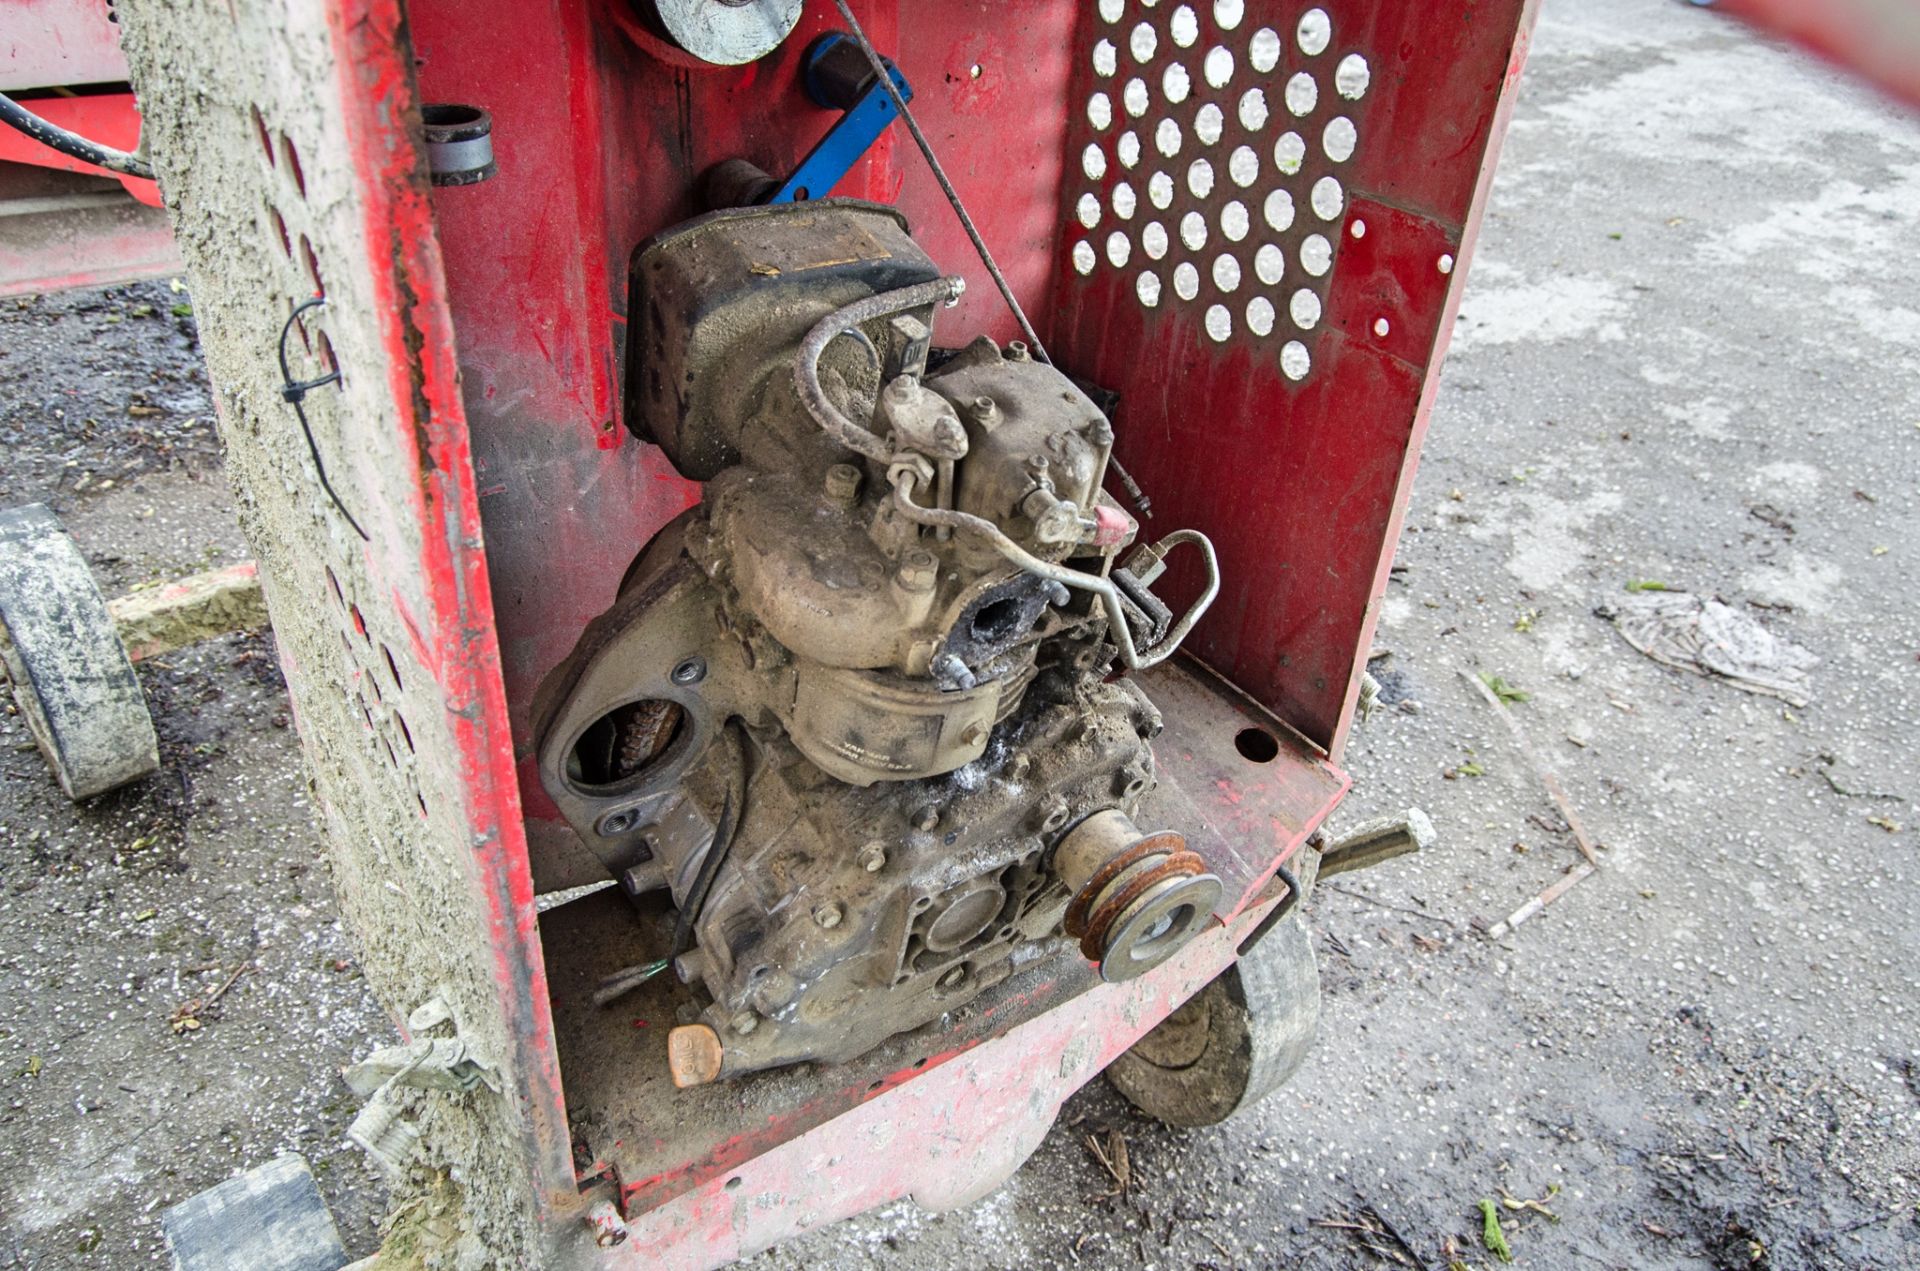 Belle Premier 100XT diesel driven site mixer ** Engine parts & drum missing ** - Image 3 of 3